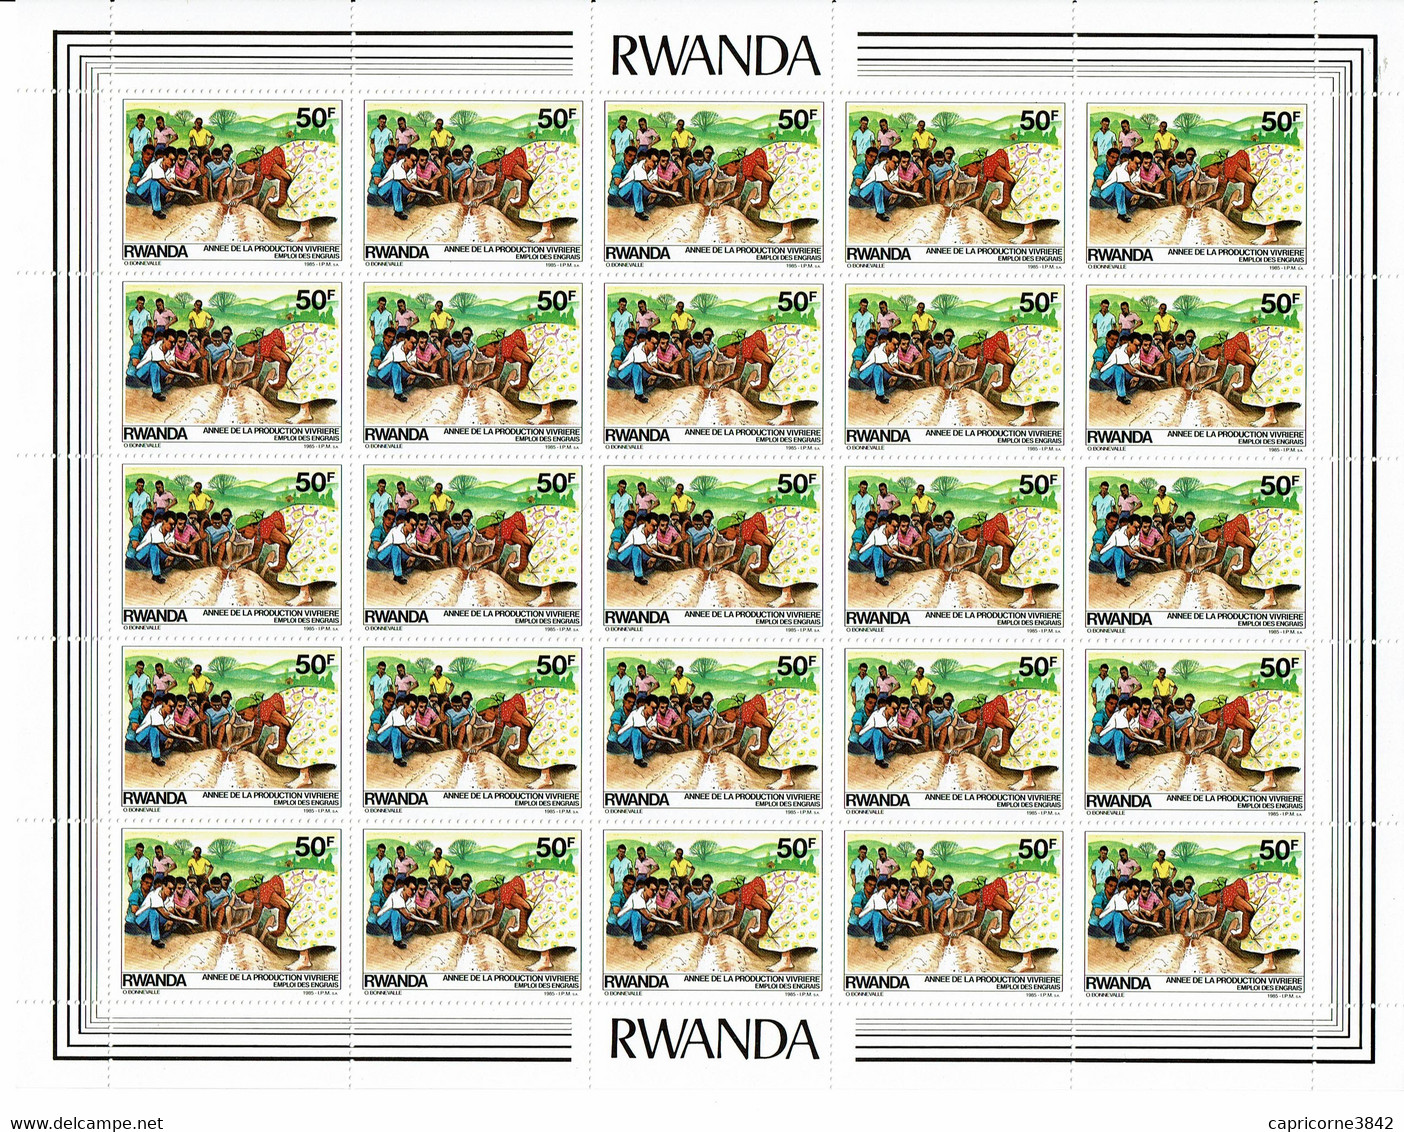 1985 - Rwanda - ANNEE DE LA PRODUCTION VIVRIERE - EMPLOI DES ENGRAIS - Feuille Entière De 25 Tp N° 1170 - Nuovi